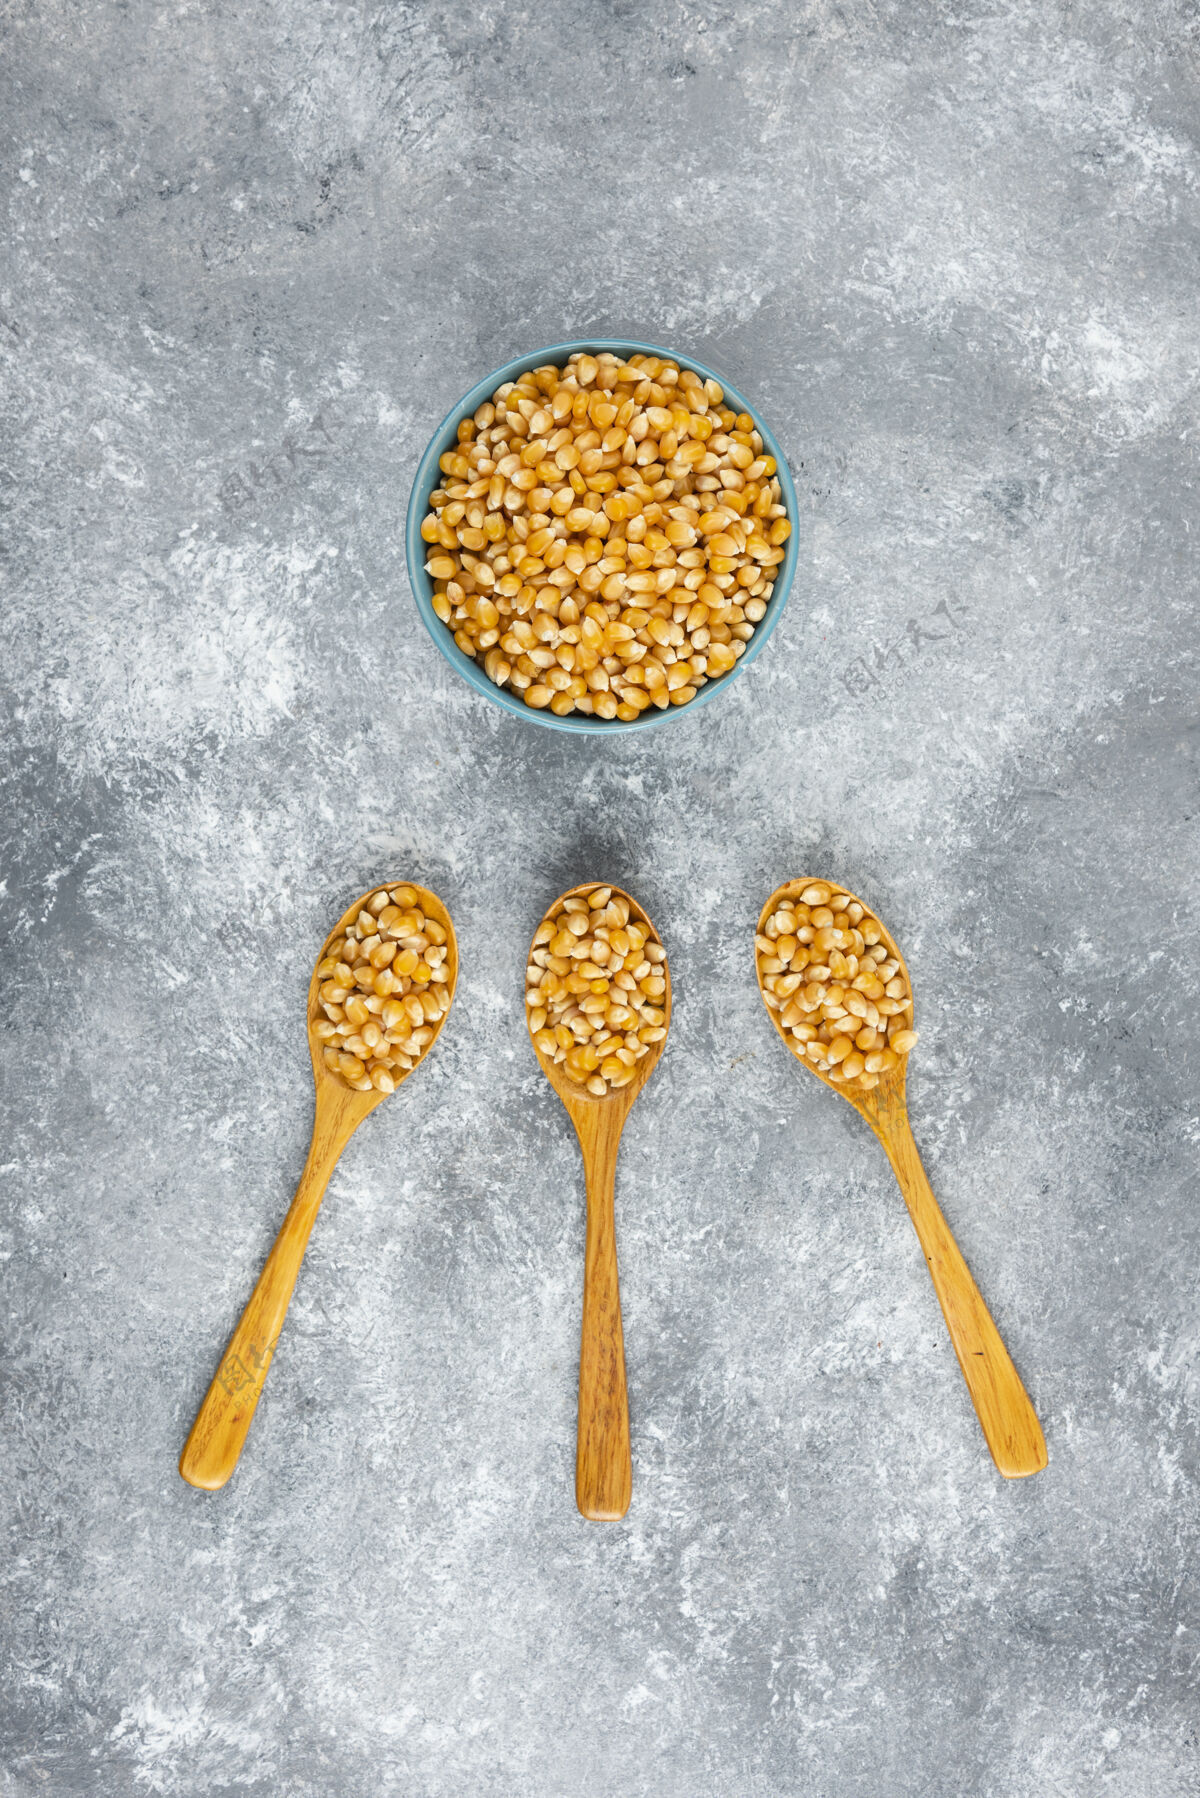 天然大理石桌上放着一碗玉米粒谷物爆米花种子